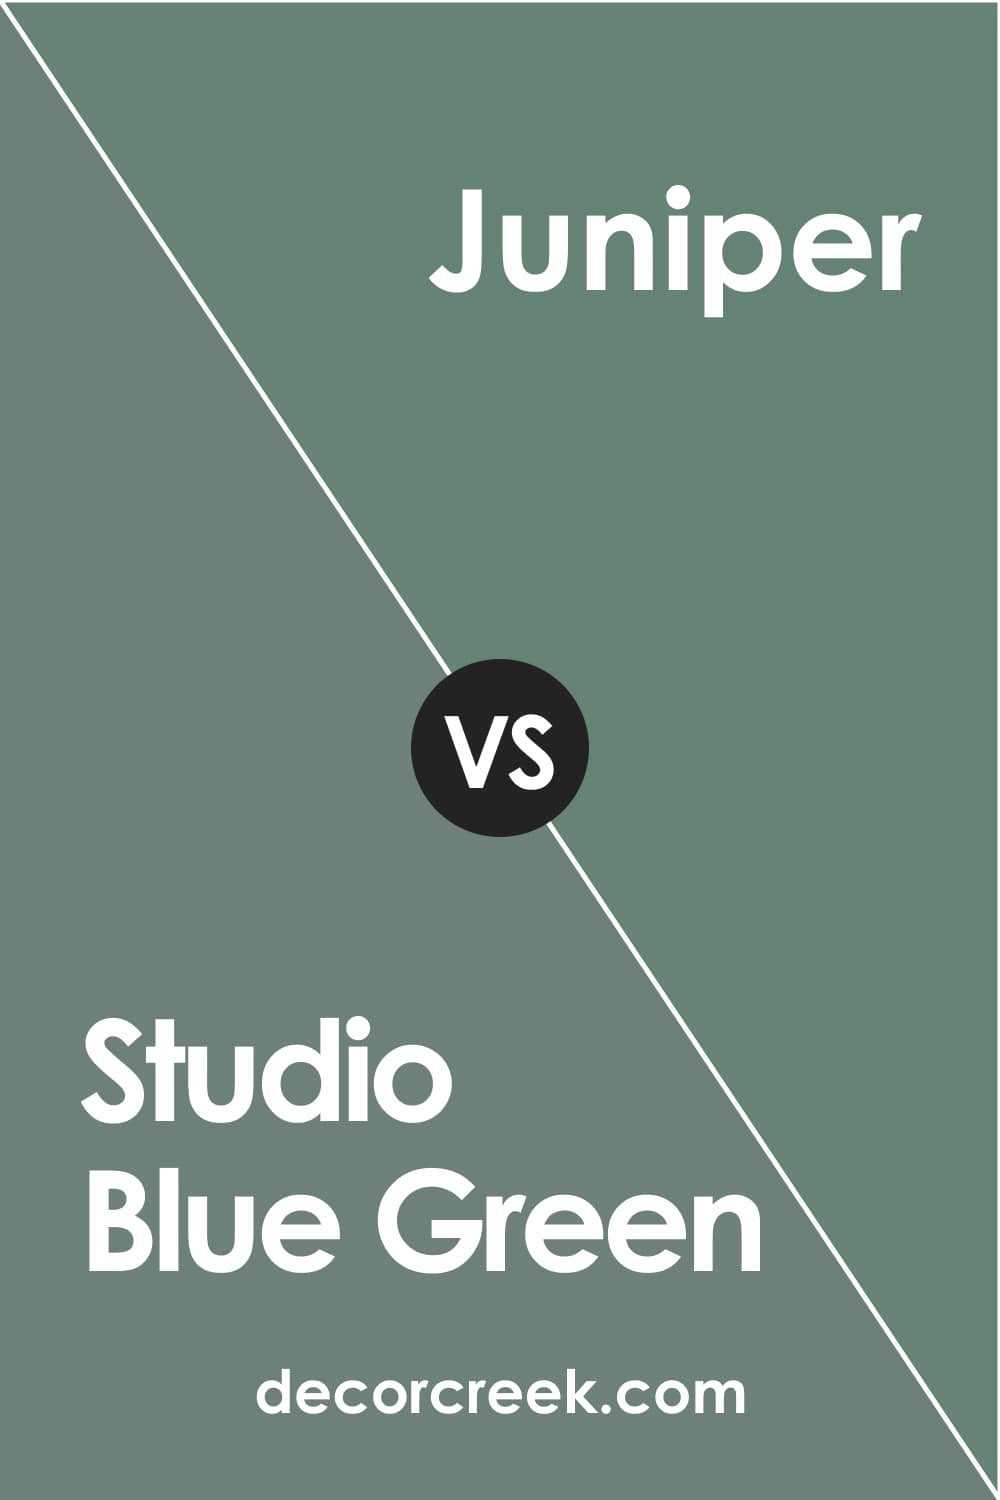 Studio Blue Green vs Juniper